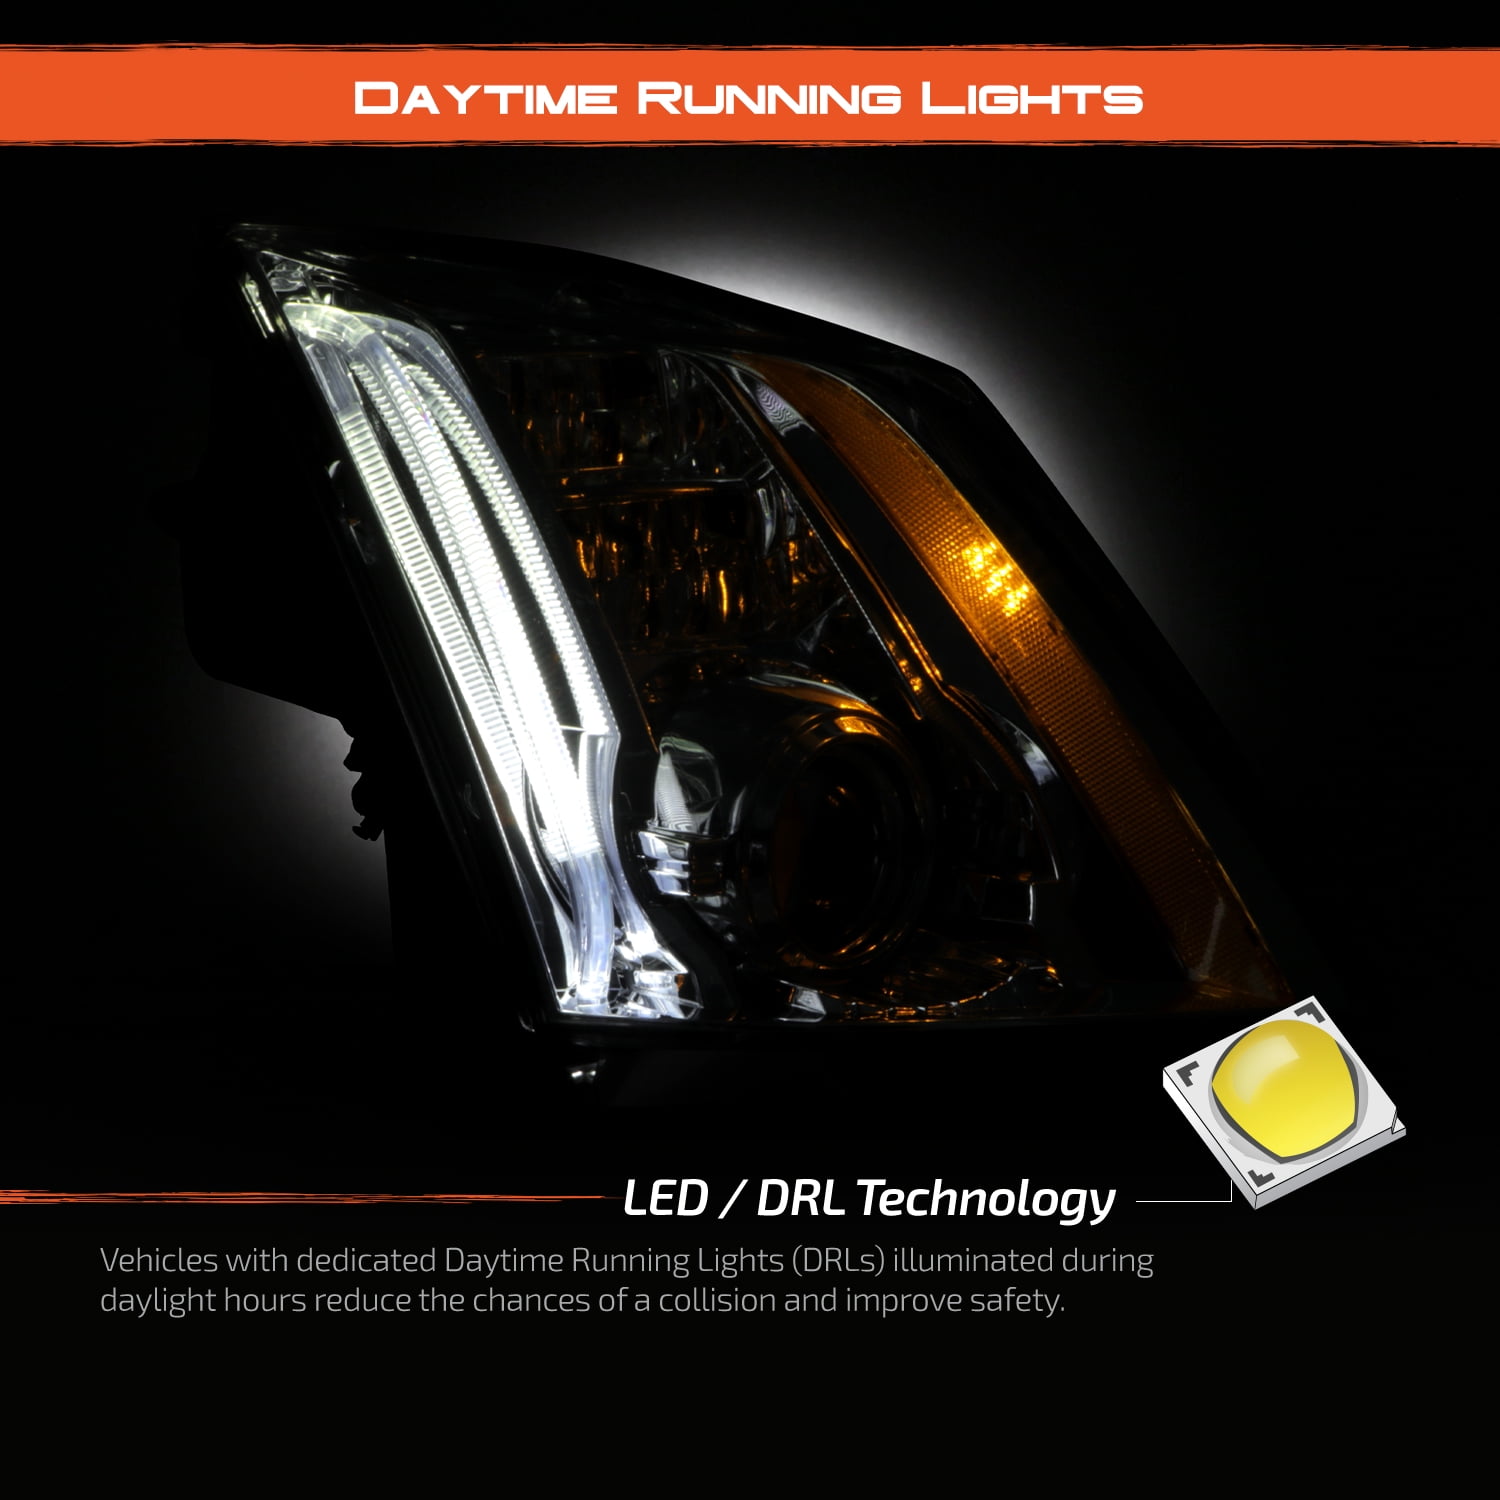 Peugeot 208 LTI LED headlamps look xenon - Chrome 